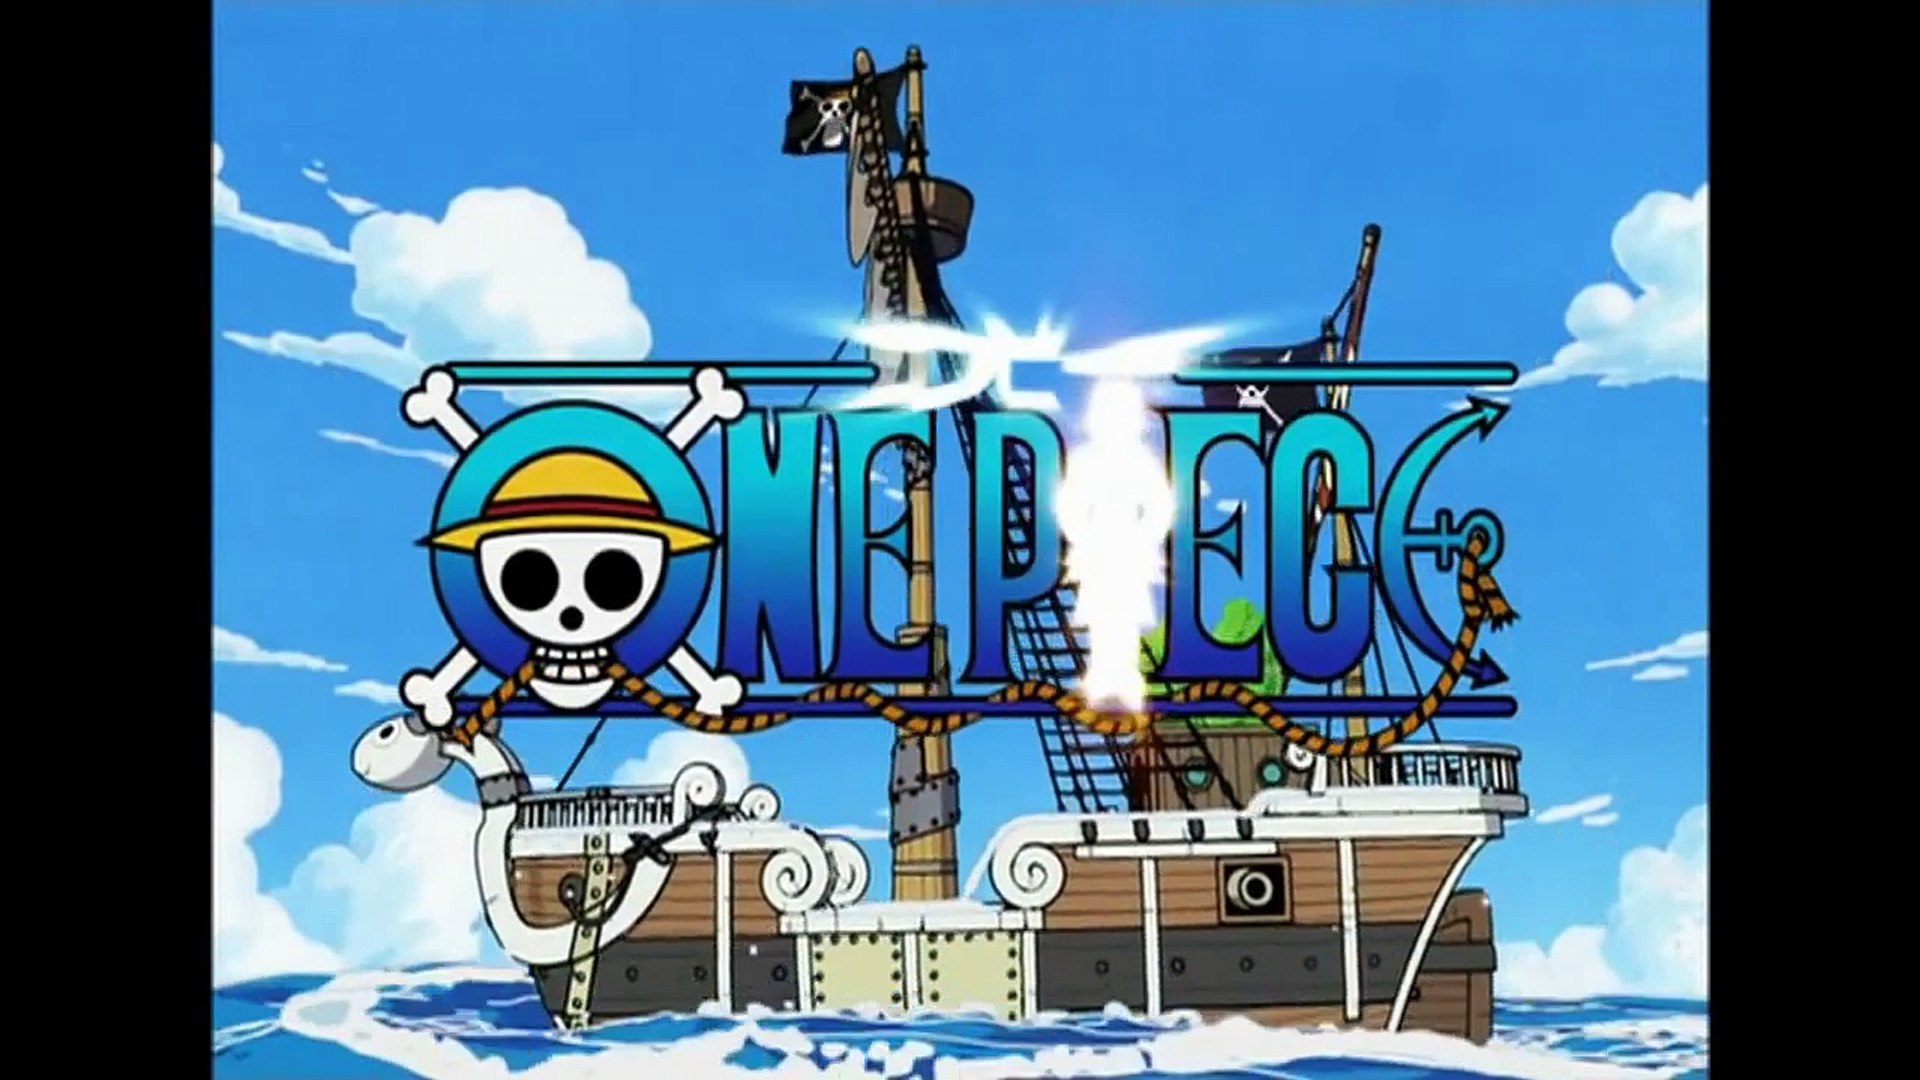 Stream Kokoro no Chizu (One Piece) by Jerry Alones